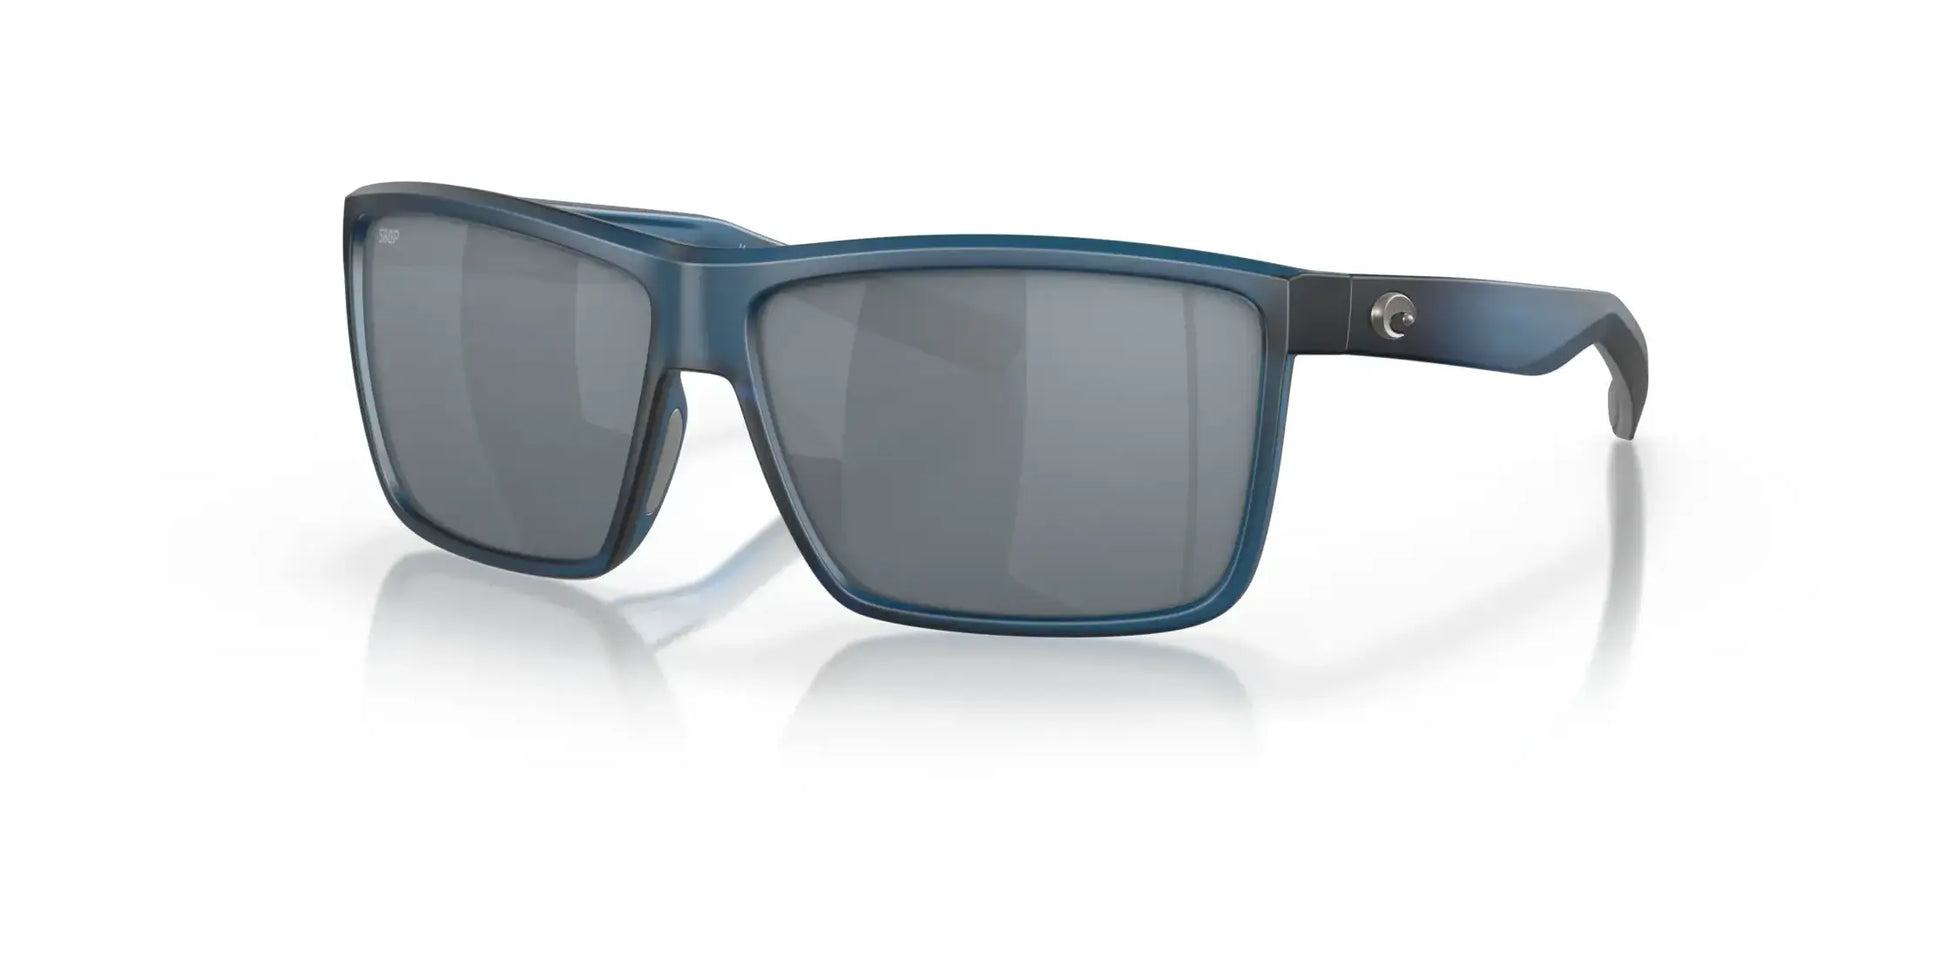 Costa RINCONCITO 6S9016 Sunglasses Matte Atlantic Blue / Gray Silver Mirror